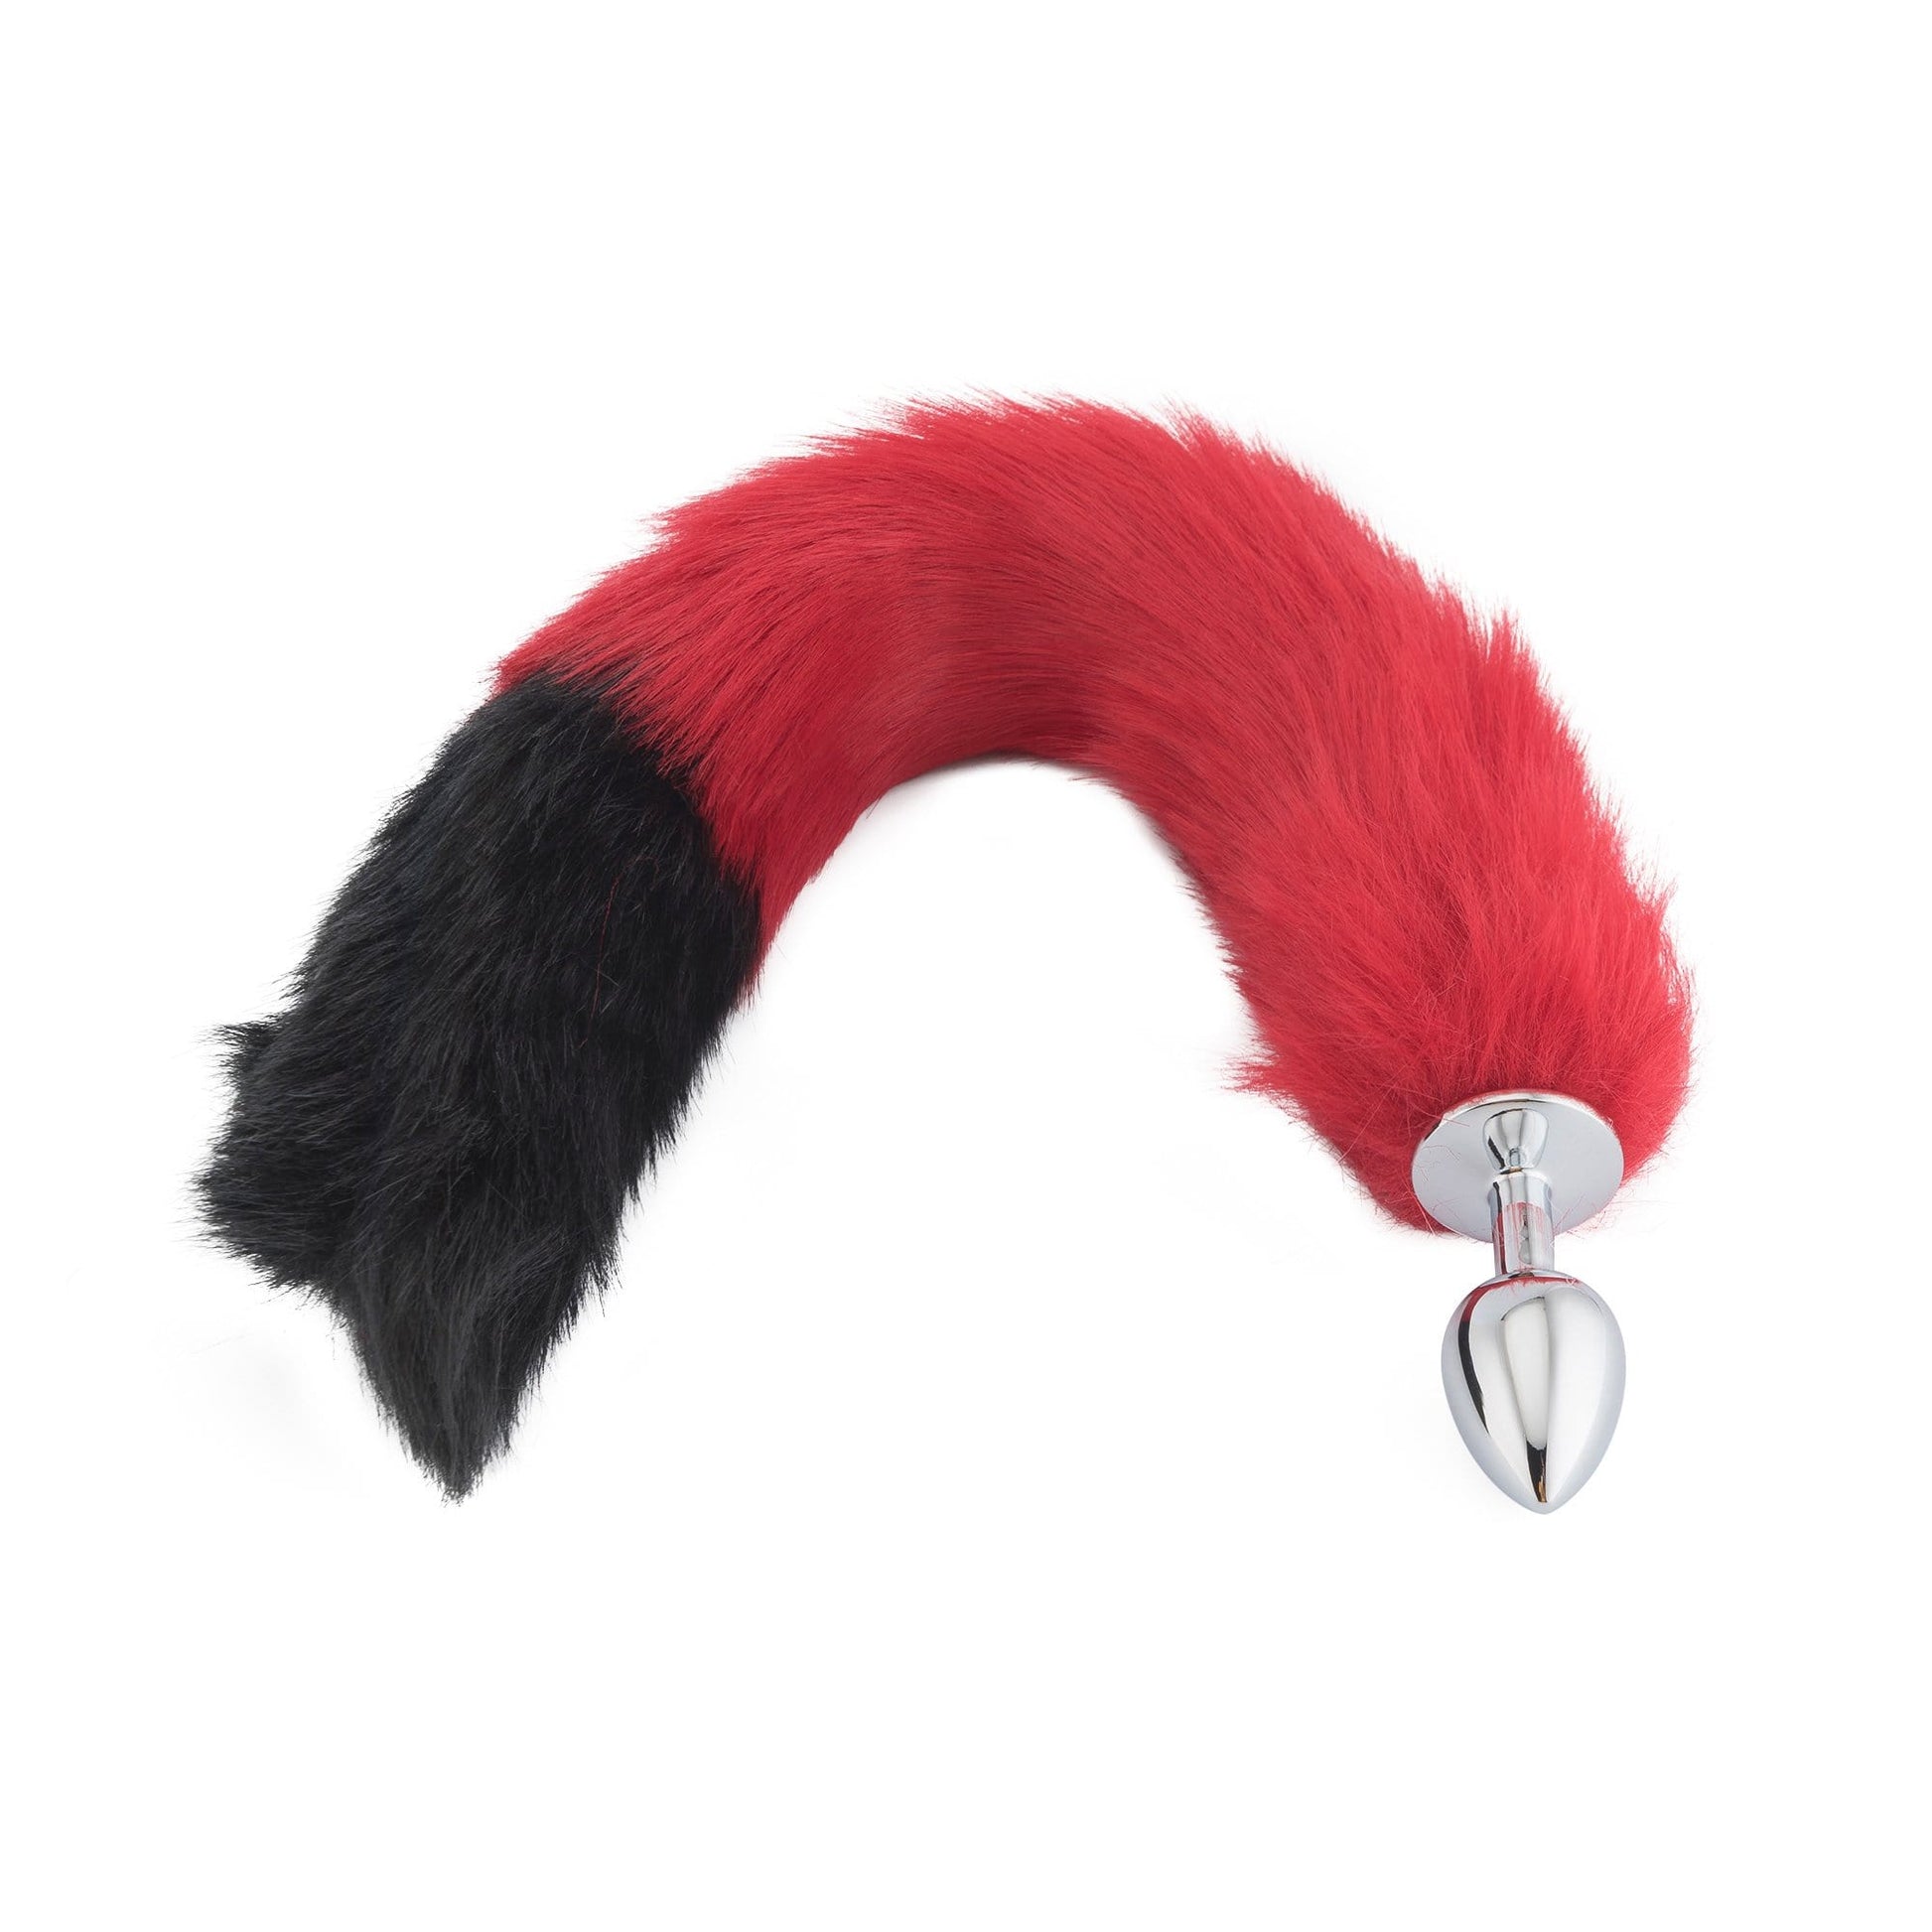 18" Red with Black Tip Fox Tail Plug - lovemesexTail Plug